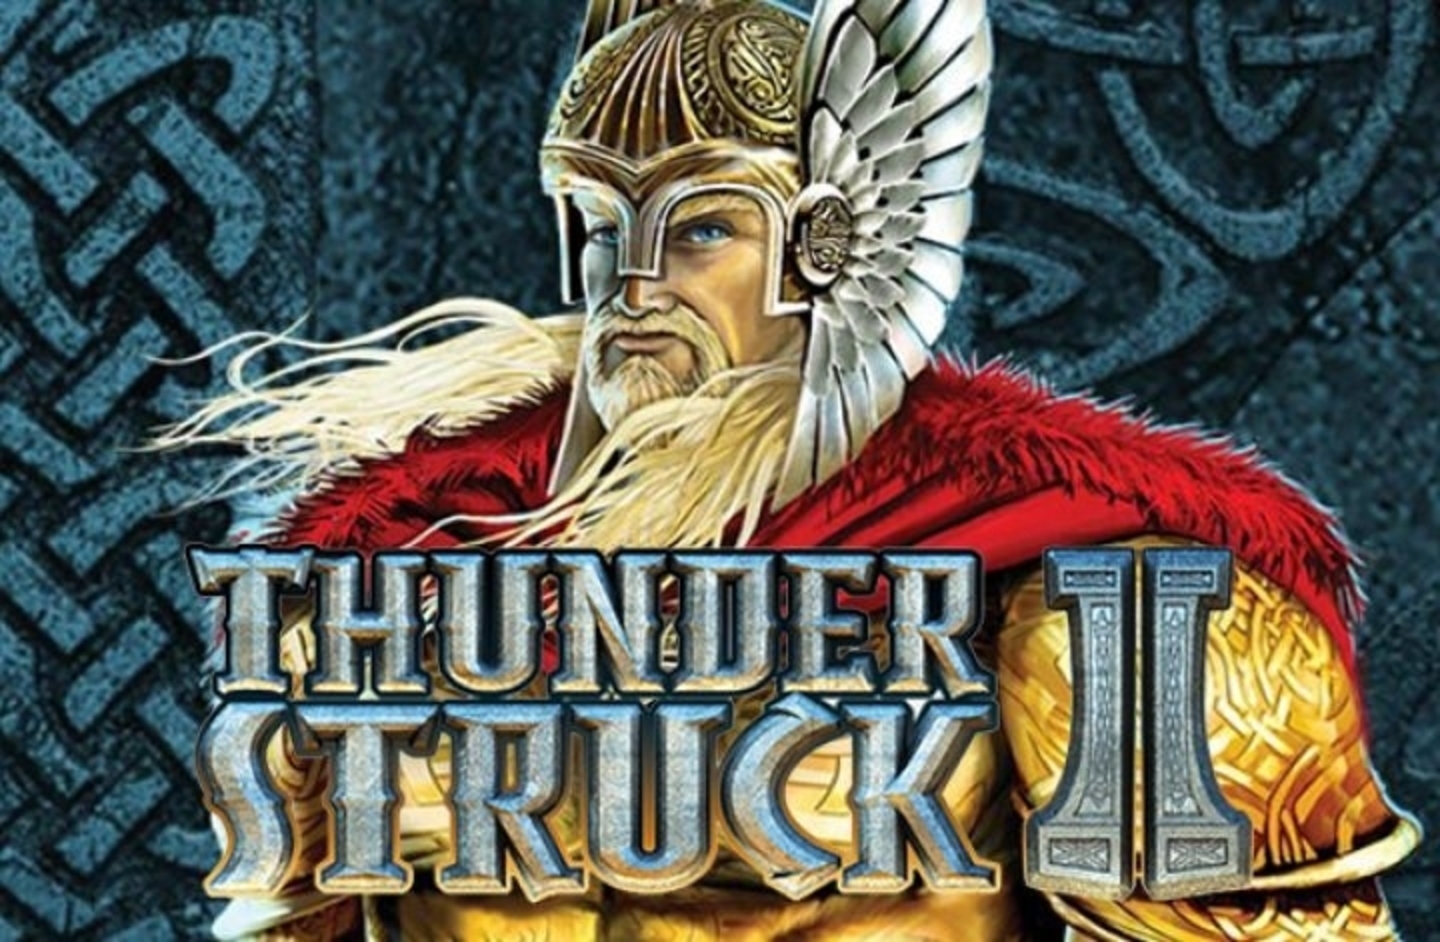 Thunderstruck II demo